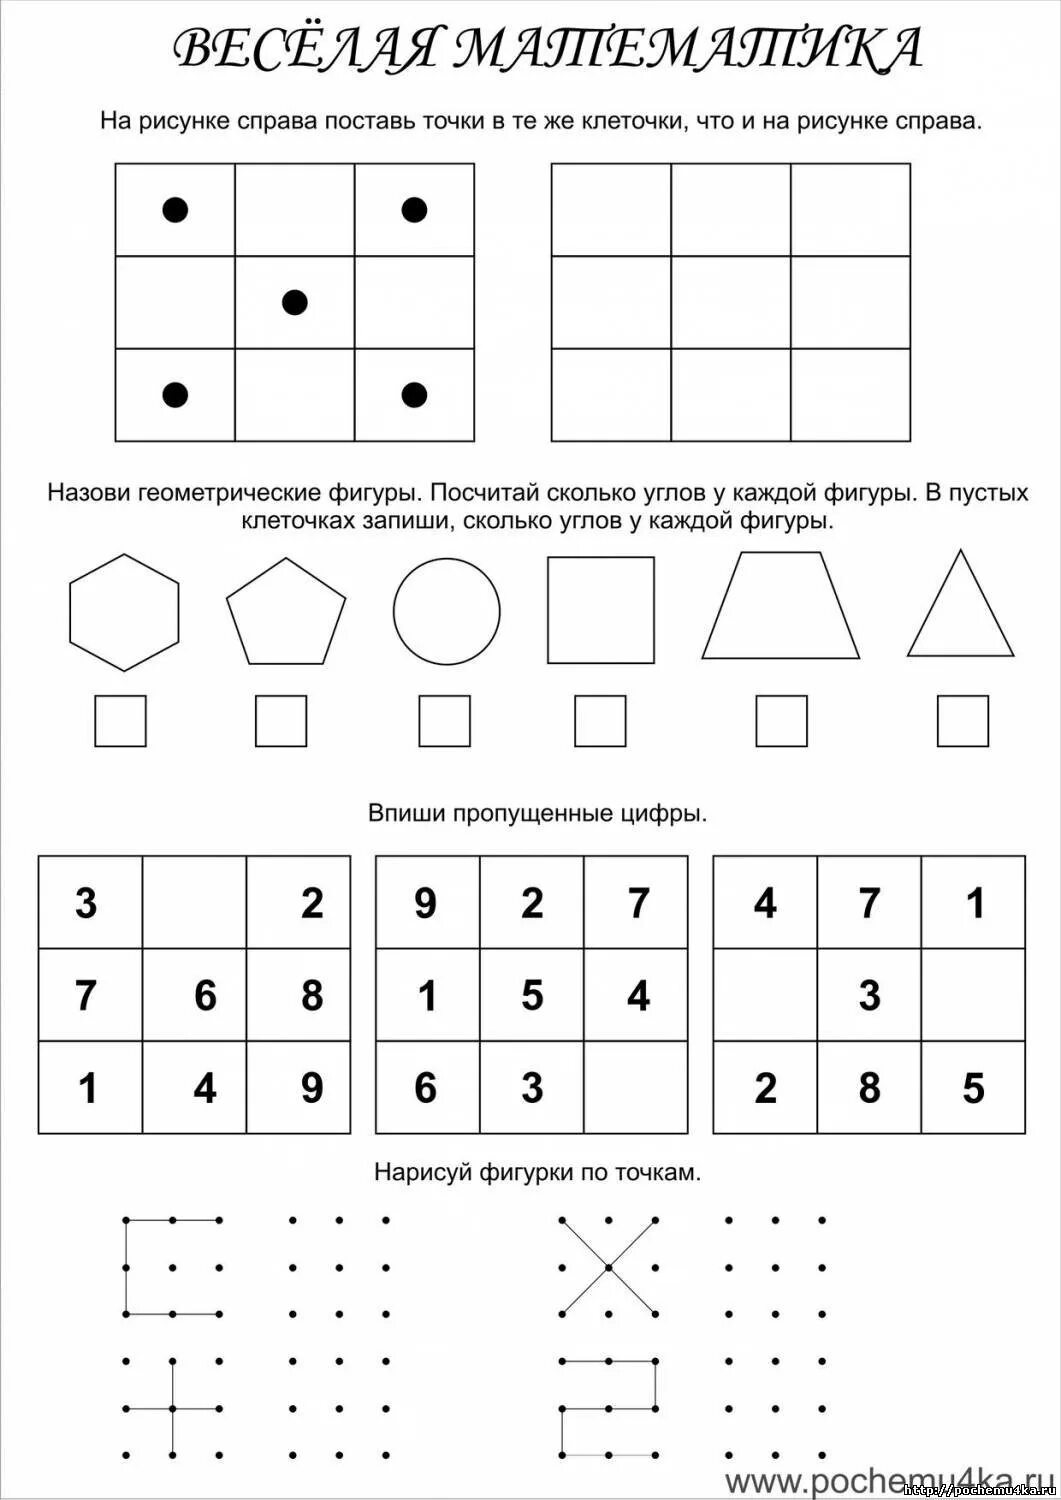 Математические логические задачи для дошкольников 6-7 лет. Занимательные задания по математике для дошкольников. Математика для дошкольников занимательные упражнения. Занимательные математические задания для дошкольников.